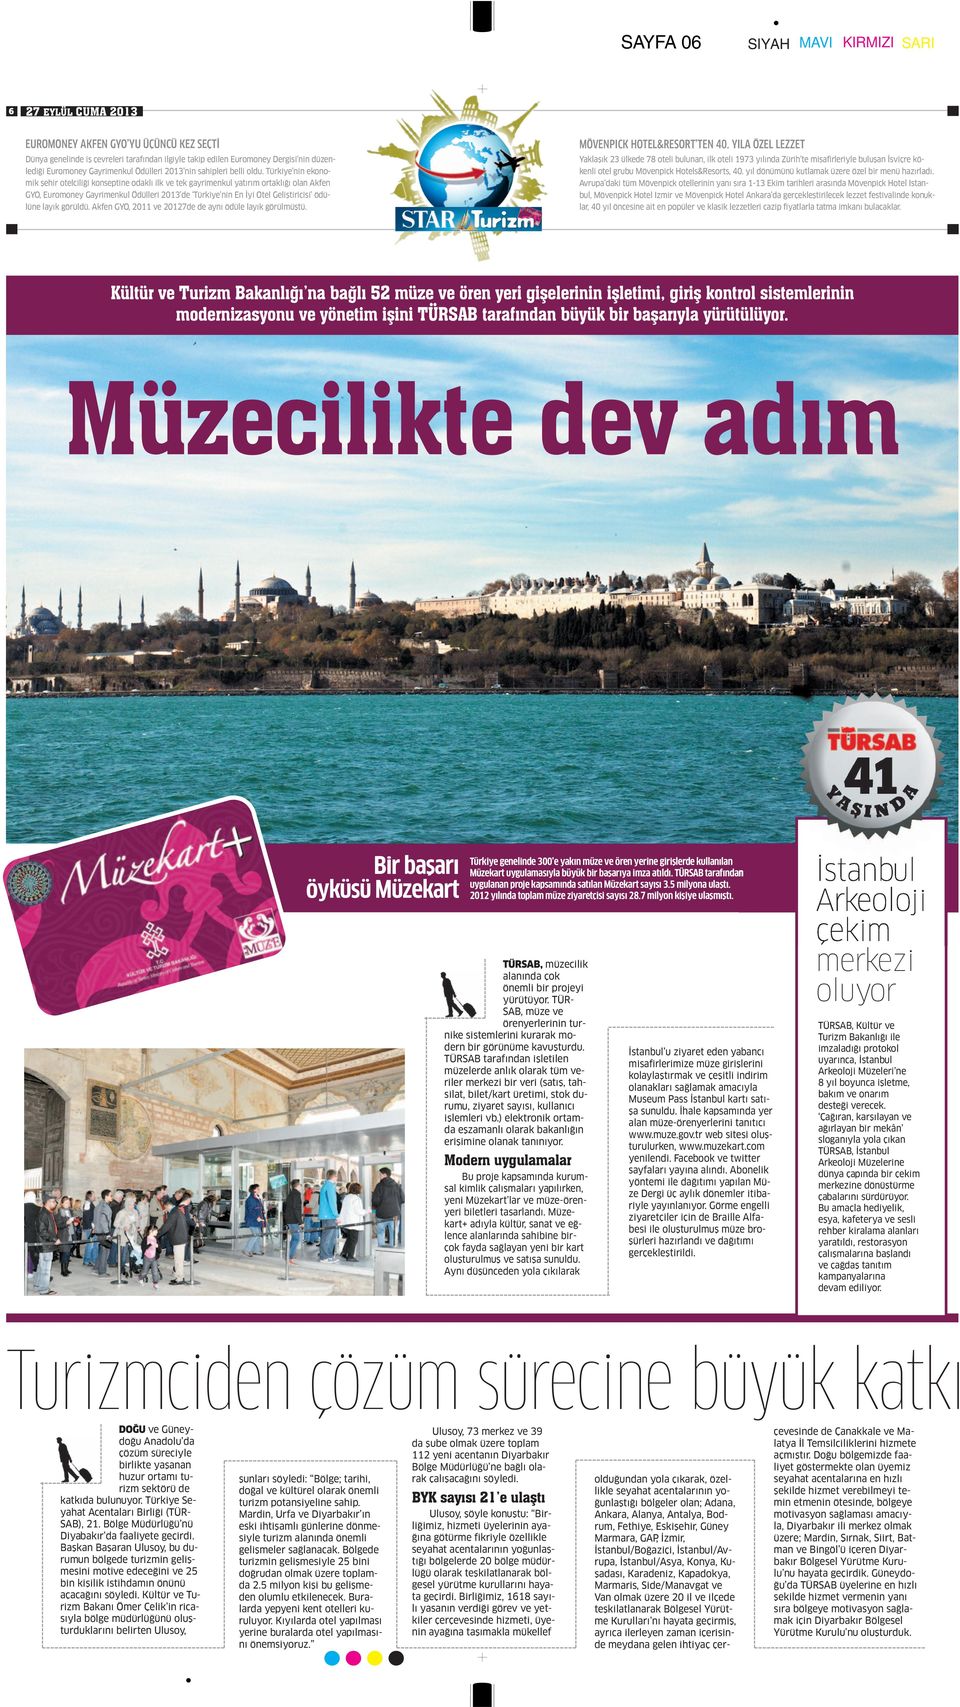 Türkiye nin ekonomik şehir otelciliği konseptine odaklı ilk ve tek gayrimenkul yatırım ortaklığı olan Akfen GYO, Euromoney Gayrimenkul Ödülleri 2013 de Türkiye nin En İyi Otel Geliştiricisi ödülüne